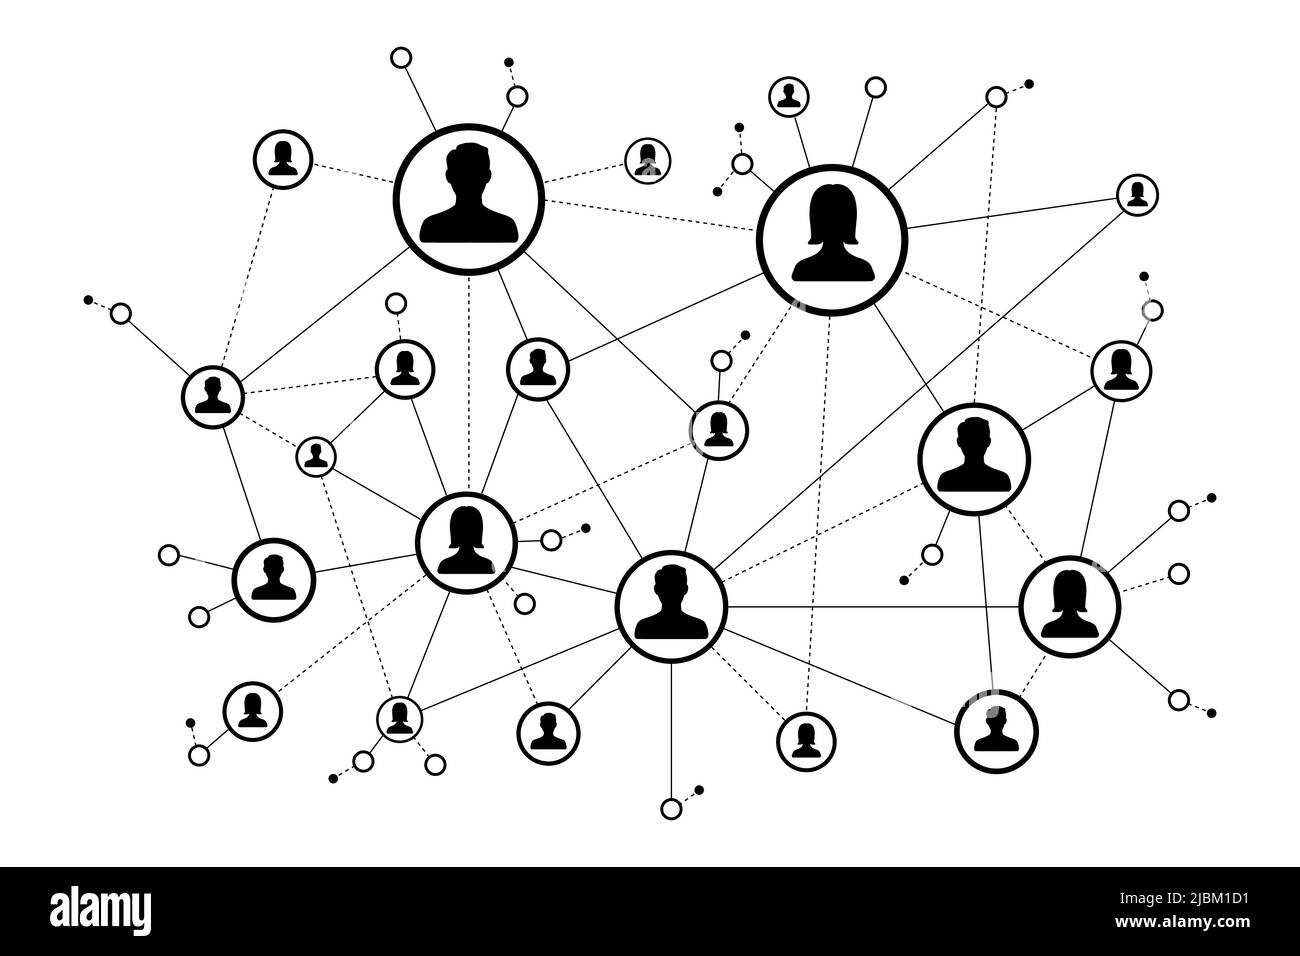 Konzept für soziale Netzwerke. Symbole für Personen, die miteinander verbunden sind. Menschliche Verbindung Stock Vektor